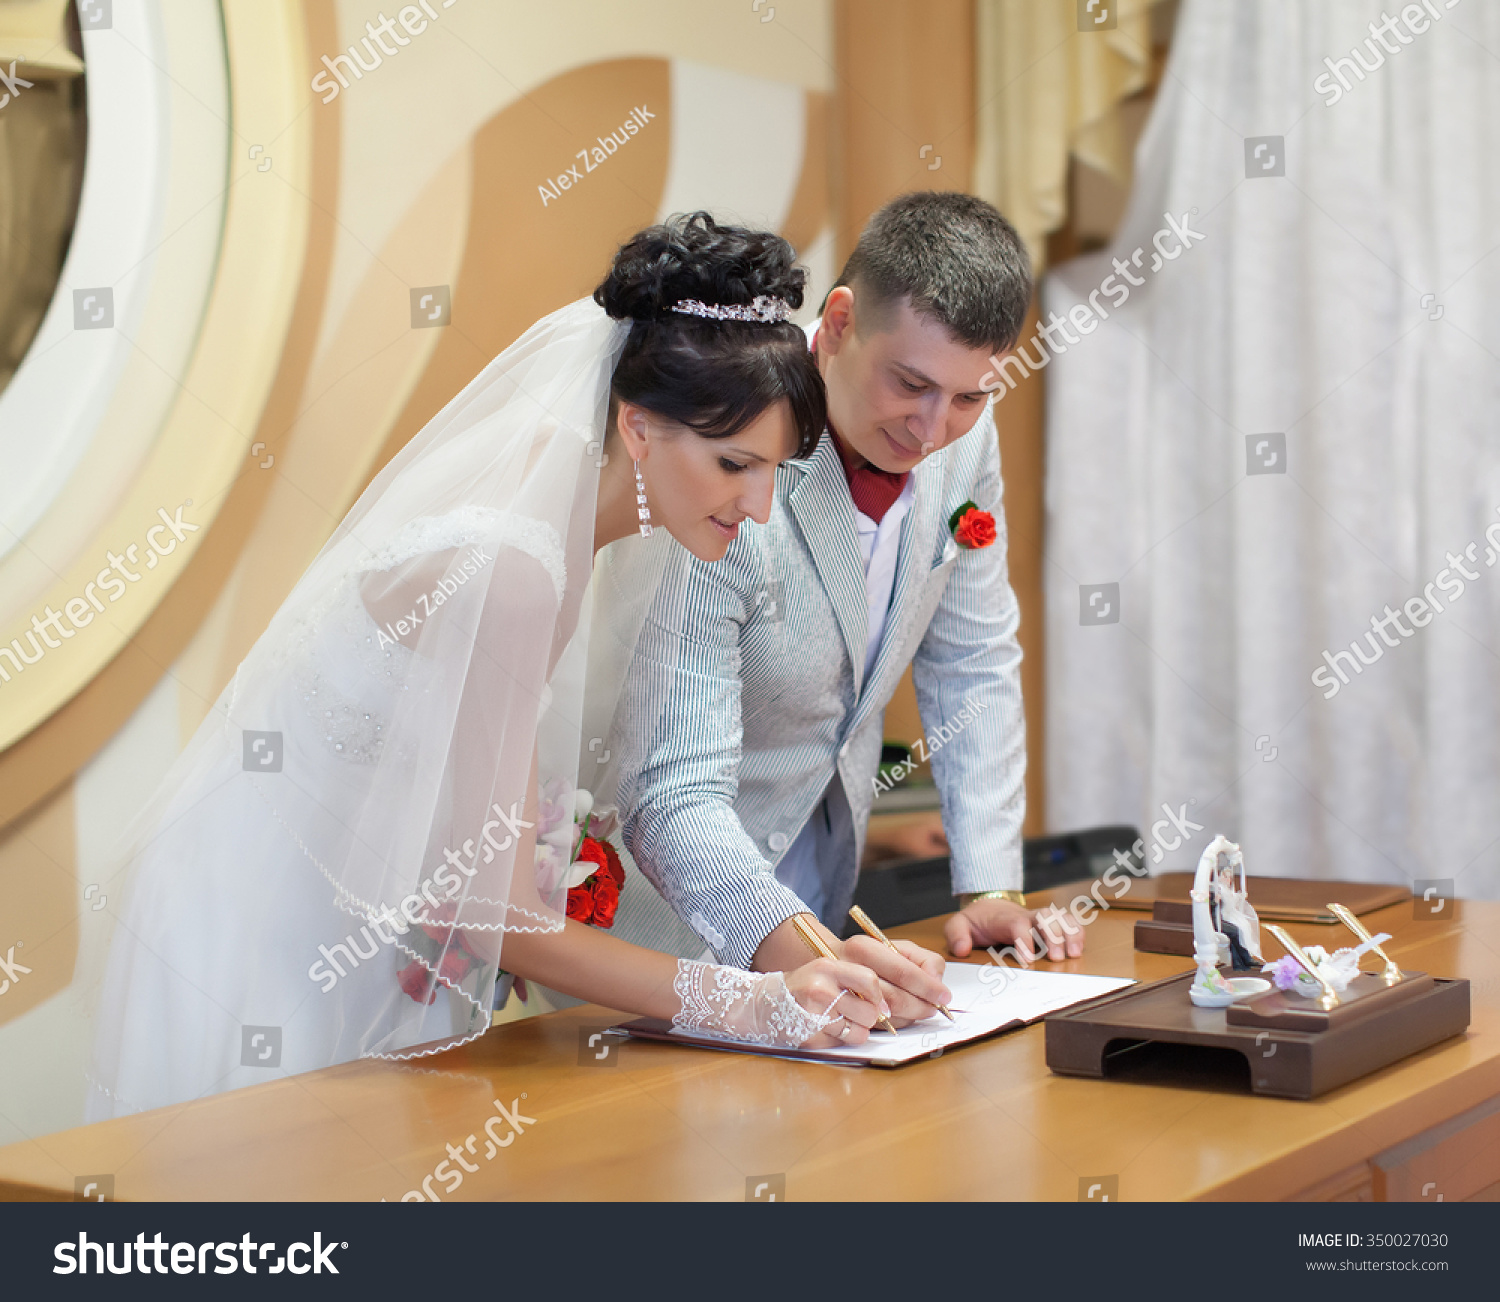 Bride Wedding Marriage Man And 47